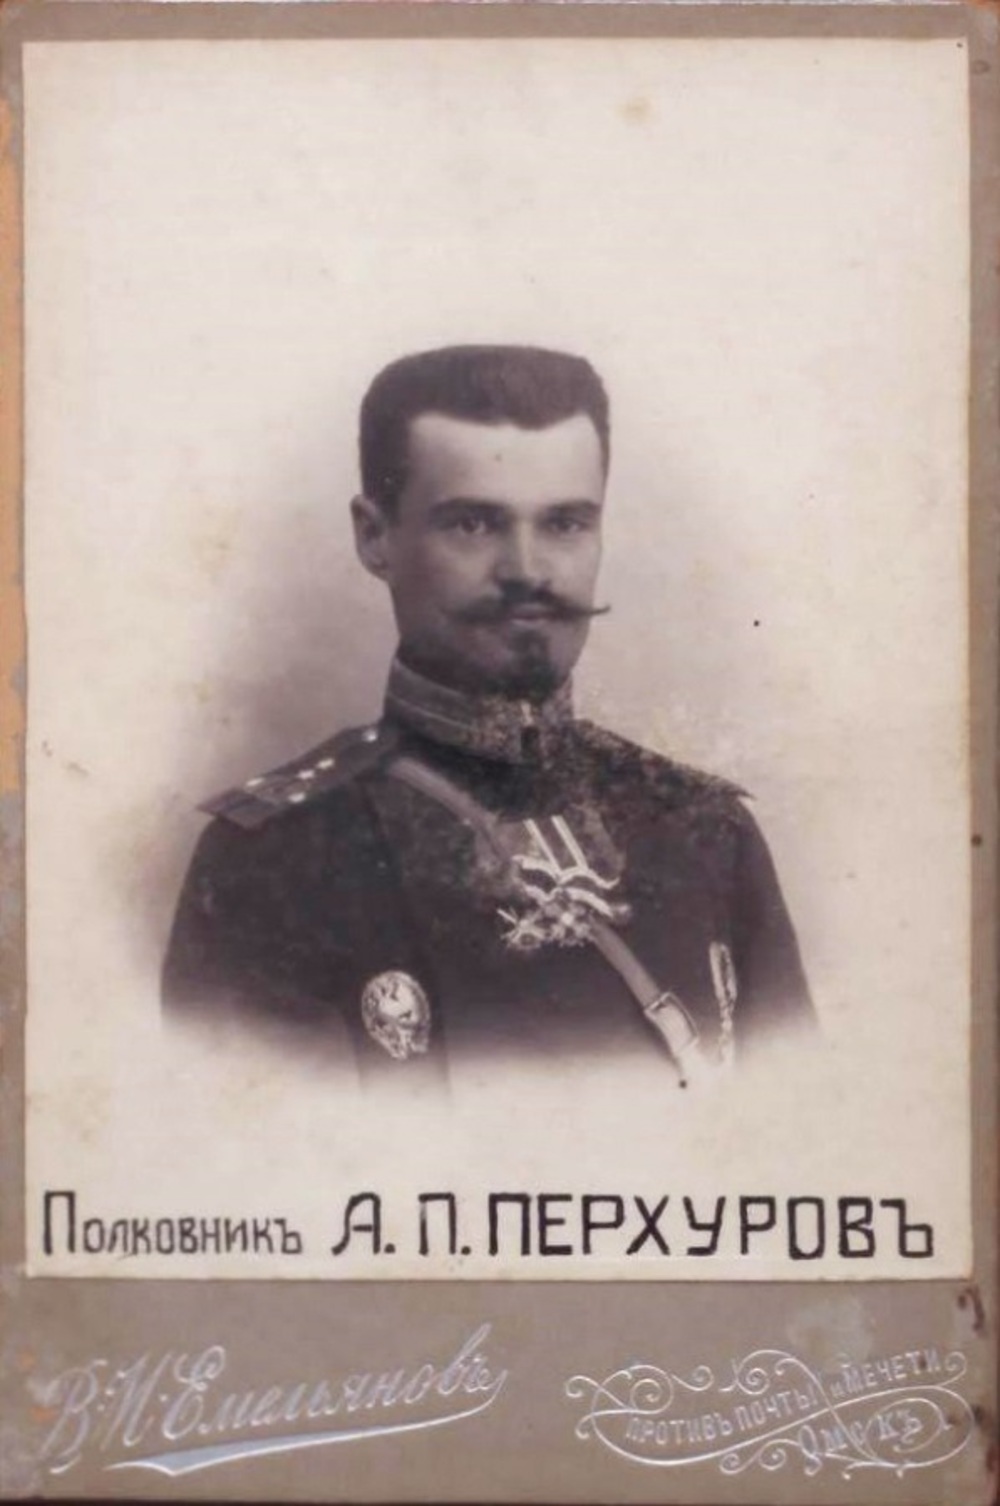 ПЕРХУРОВ Александр Петрович